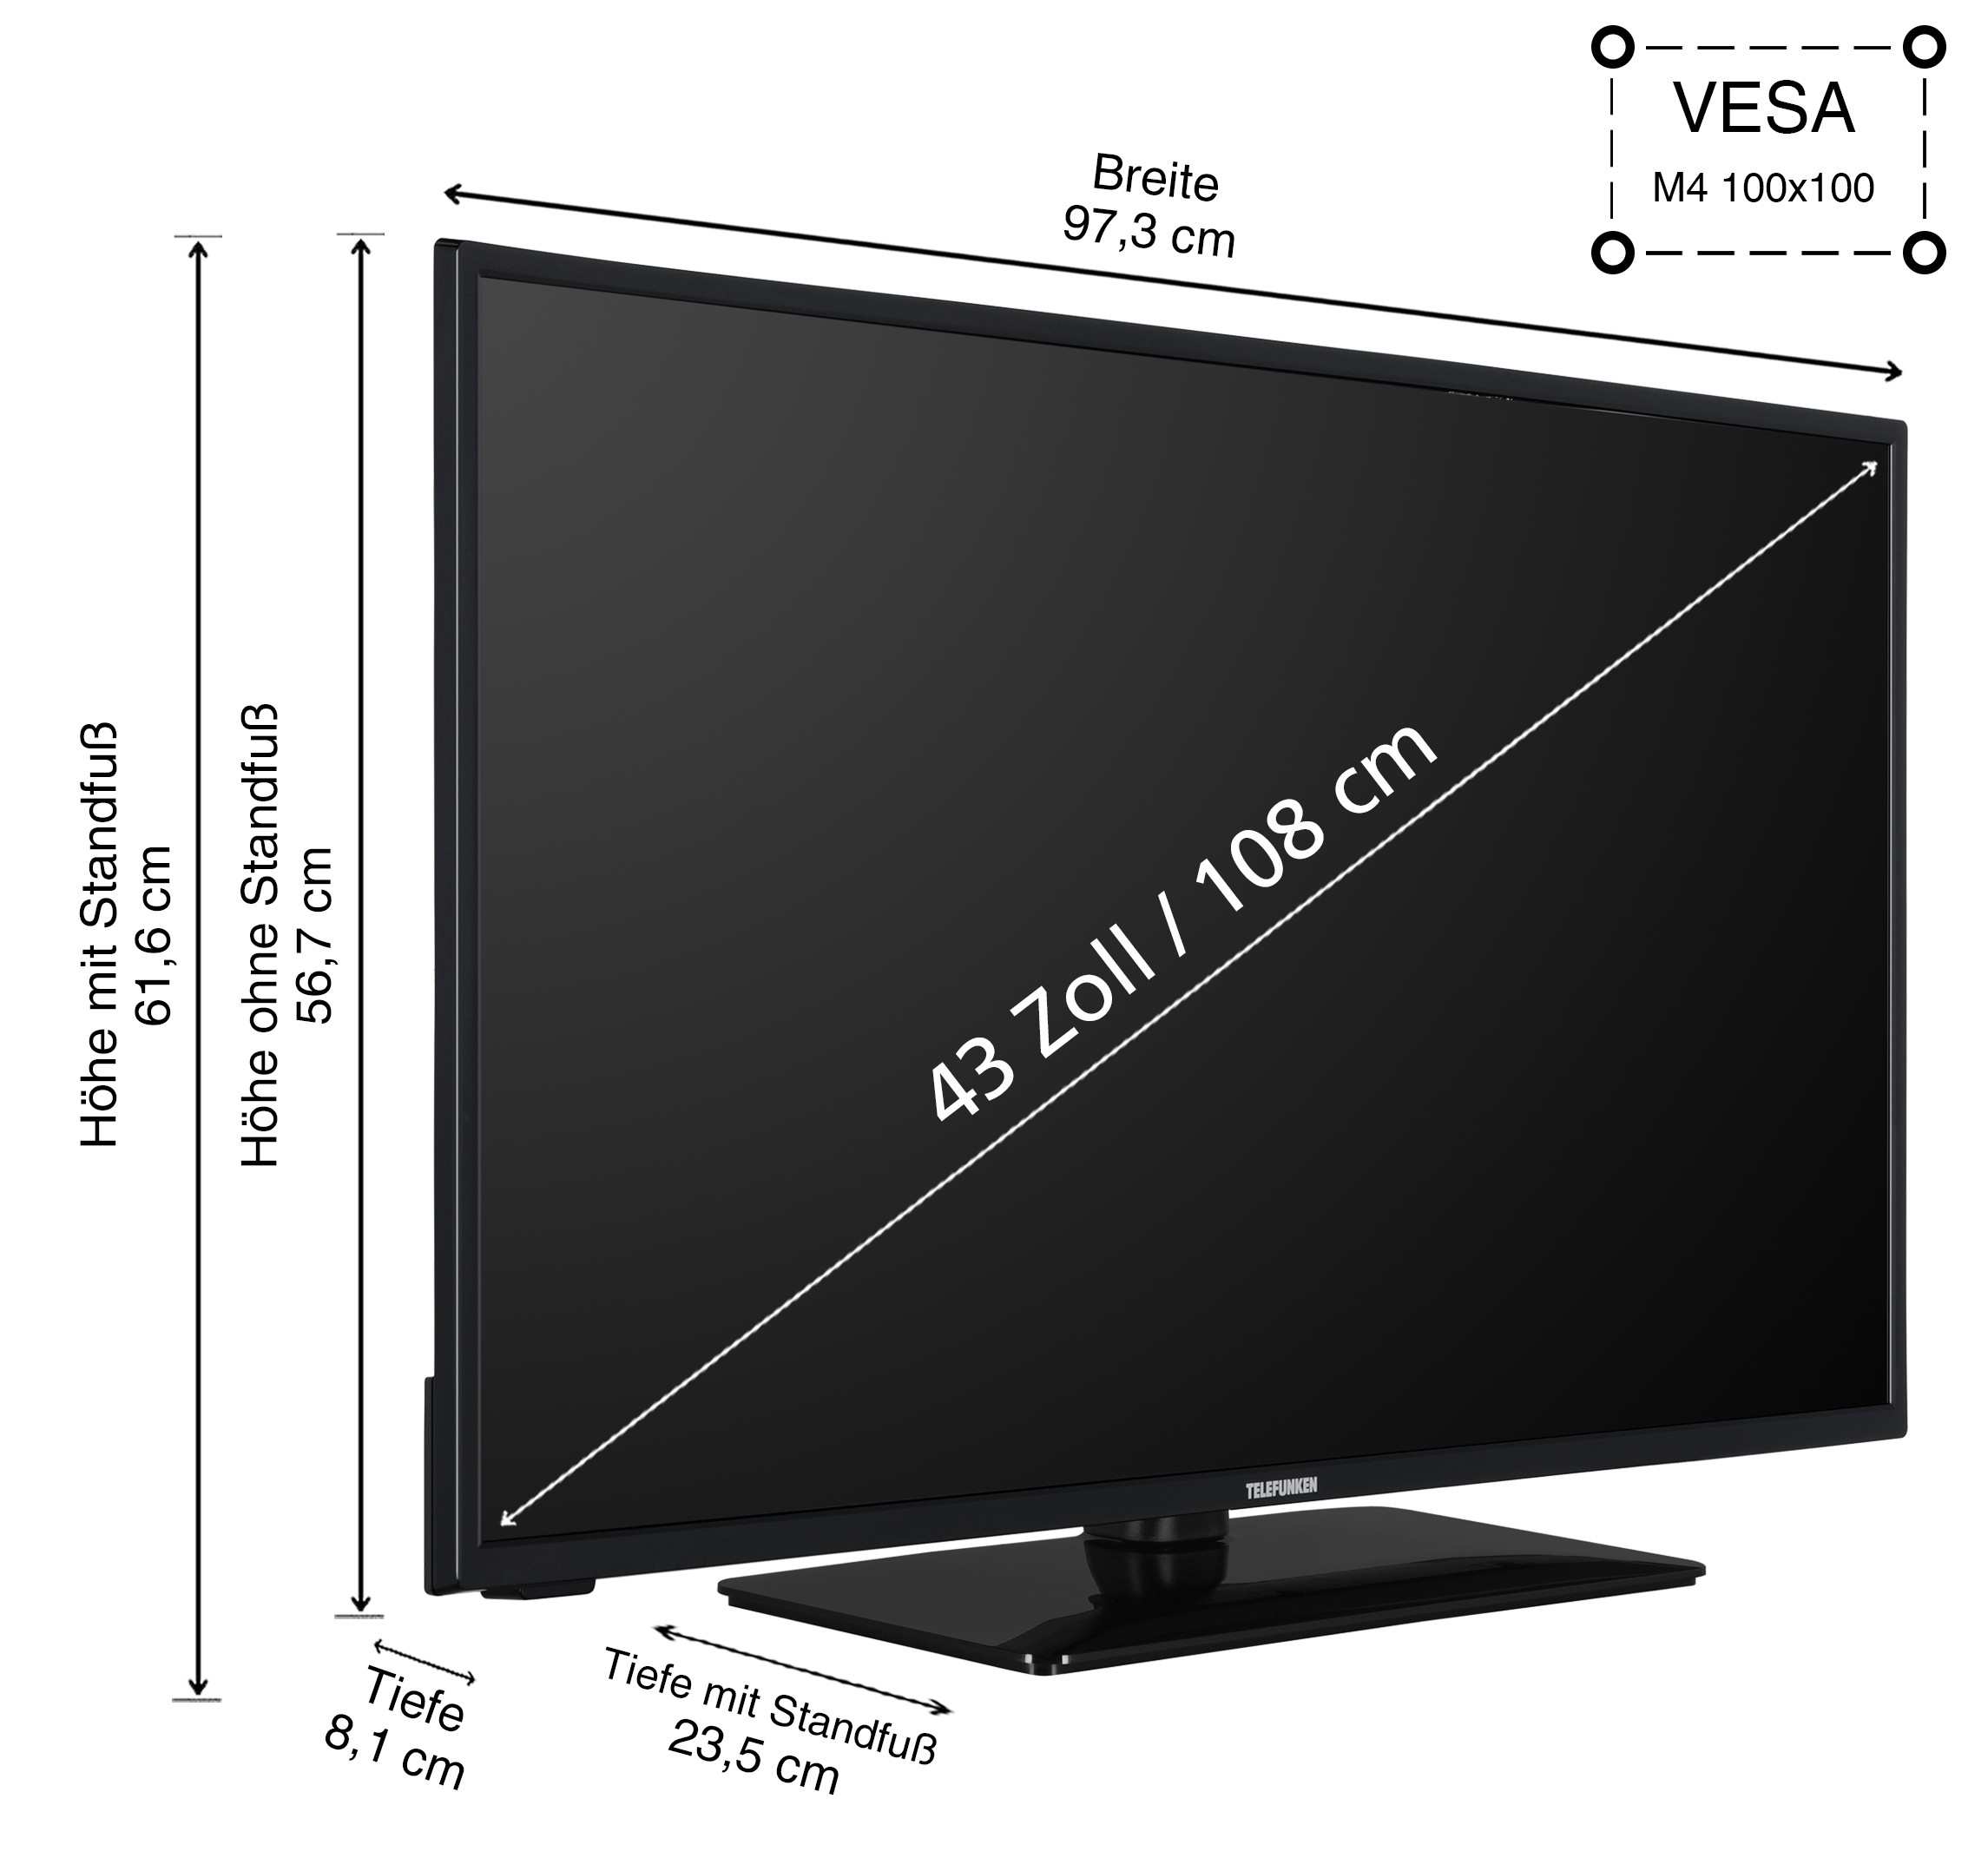 TELEFUNKEN D43U551X1CWI LED TV 43 / SMART (Flat, 4K, Zoll TV) UHD 108 cm